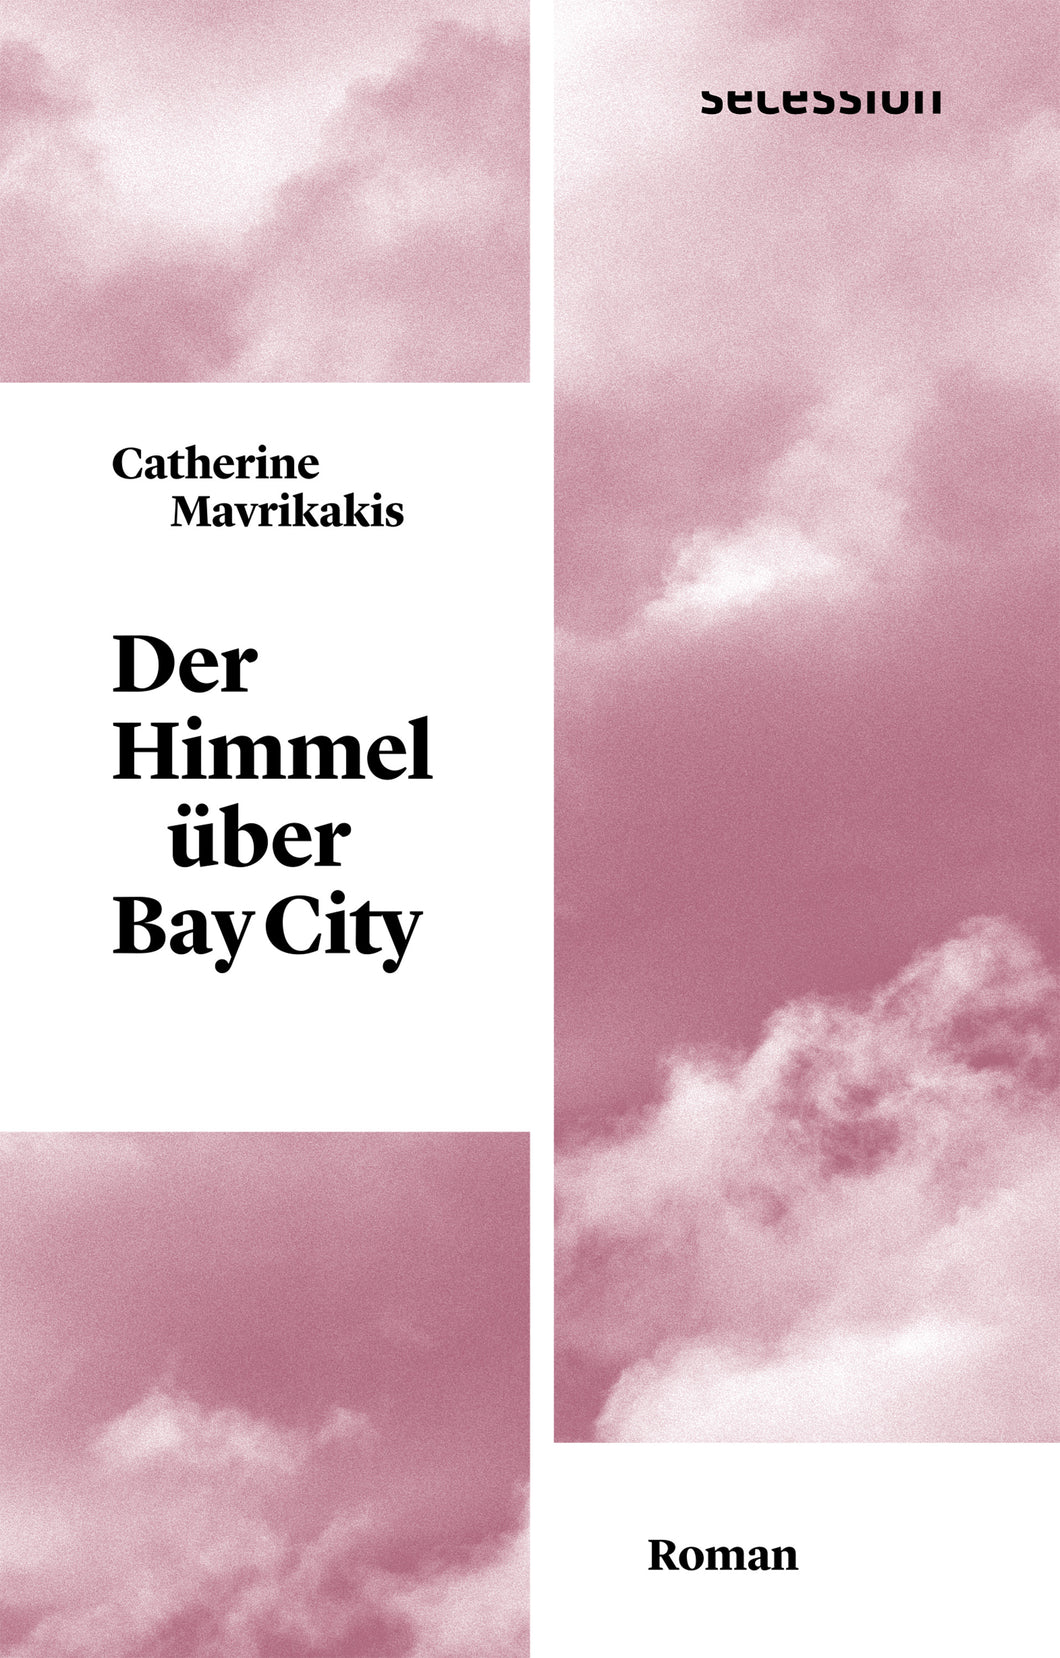 Der Himmel über Bay City von Catherine Mavrikakis